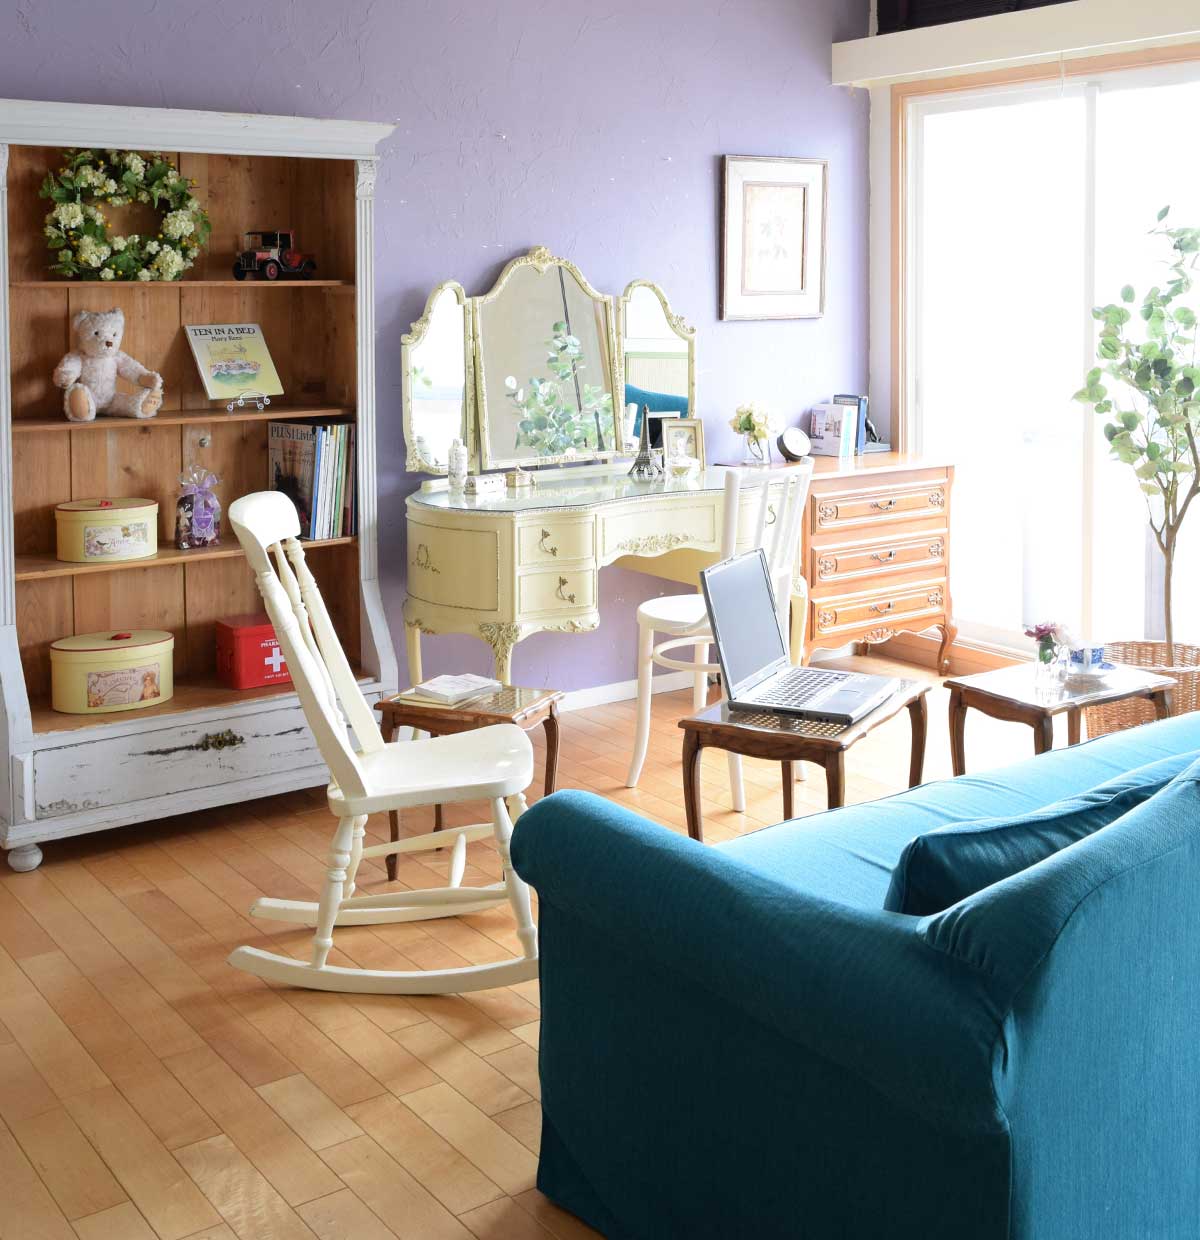 ナチュラルカントリーのリビング | 青空色のソファと雲のような白い家具が主役のリビング